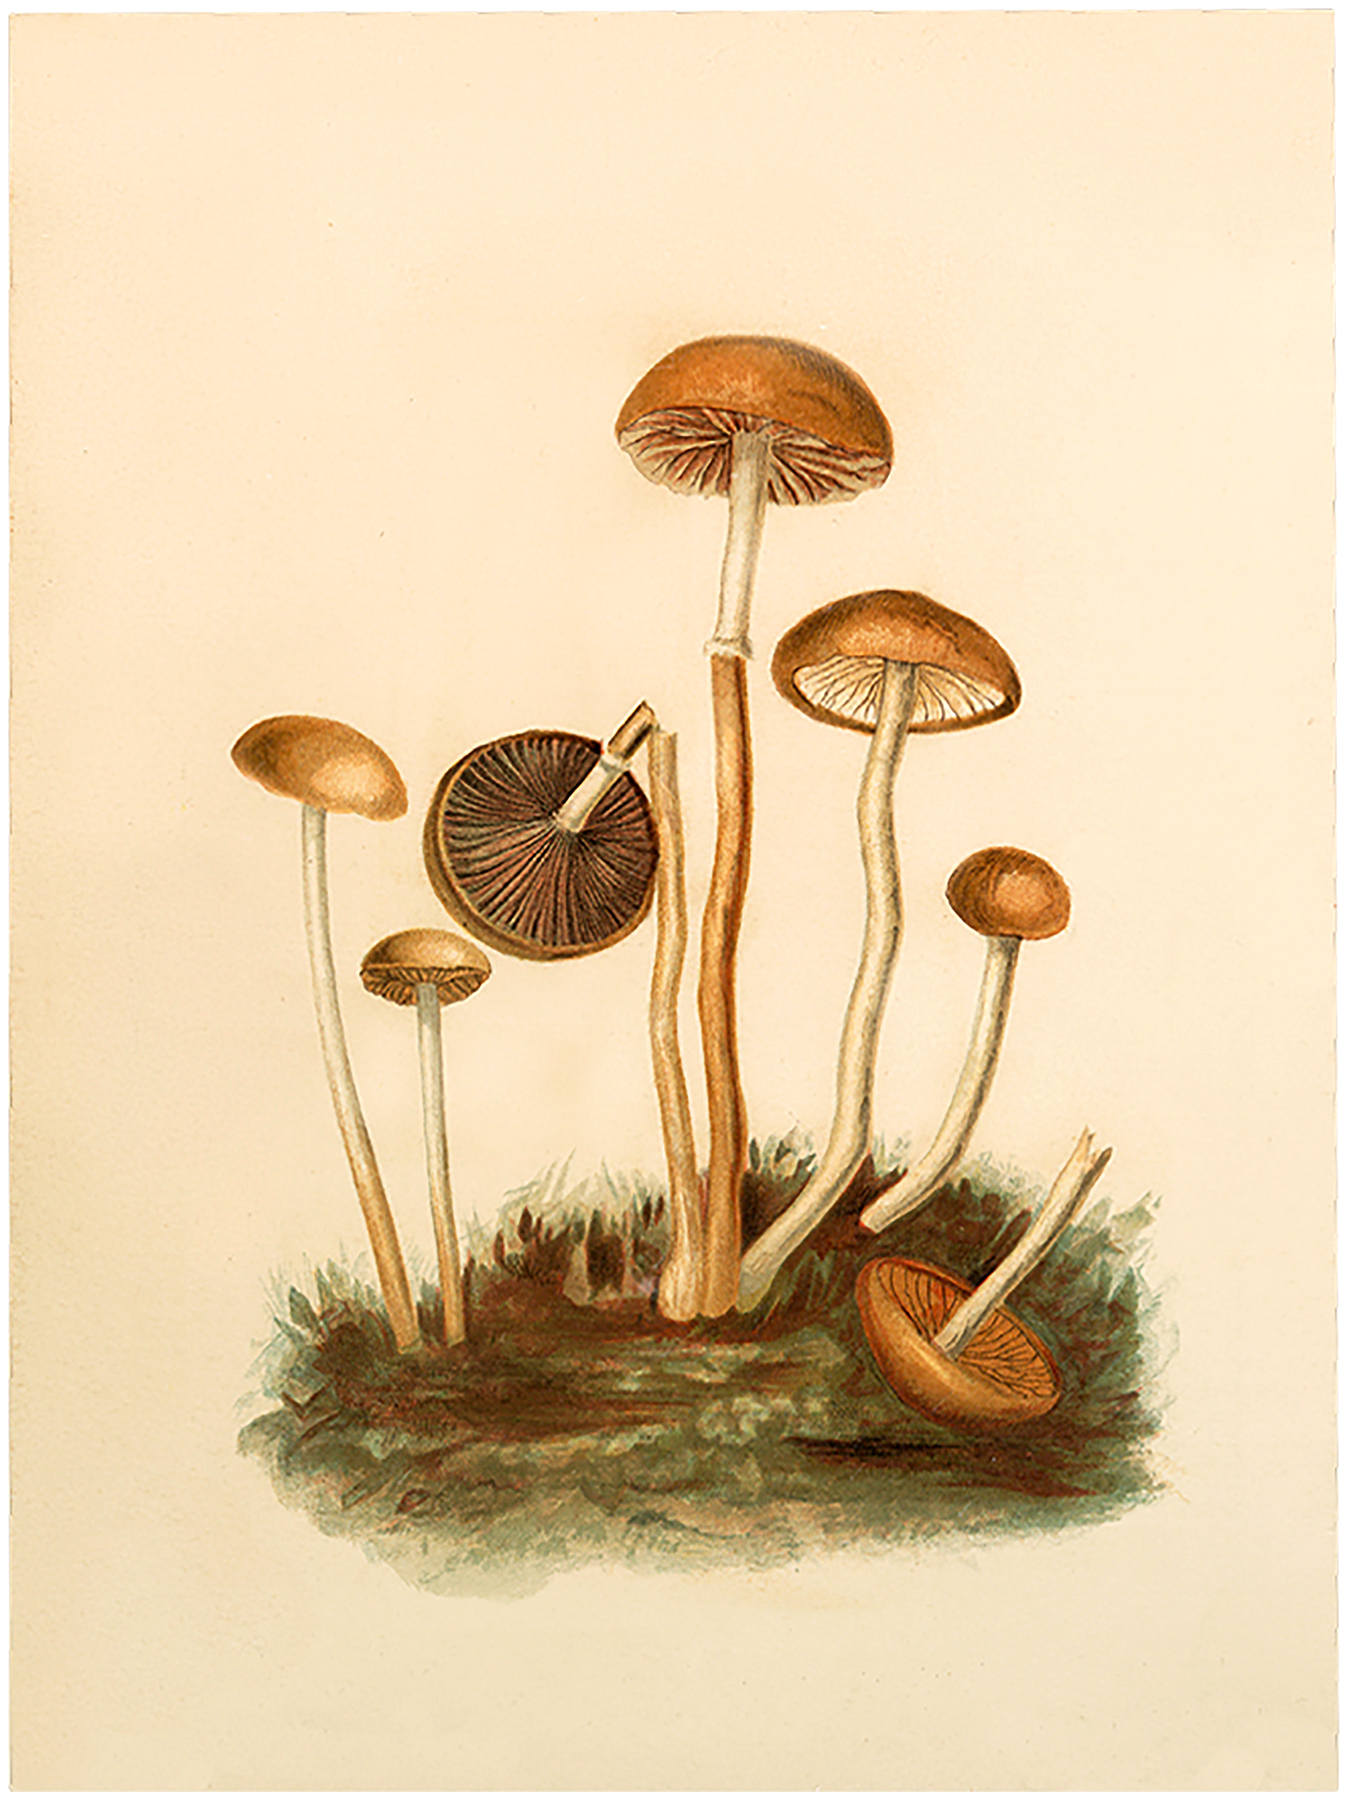 mushrooms clipart vintage